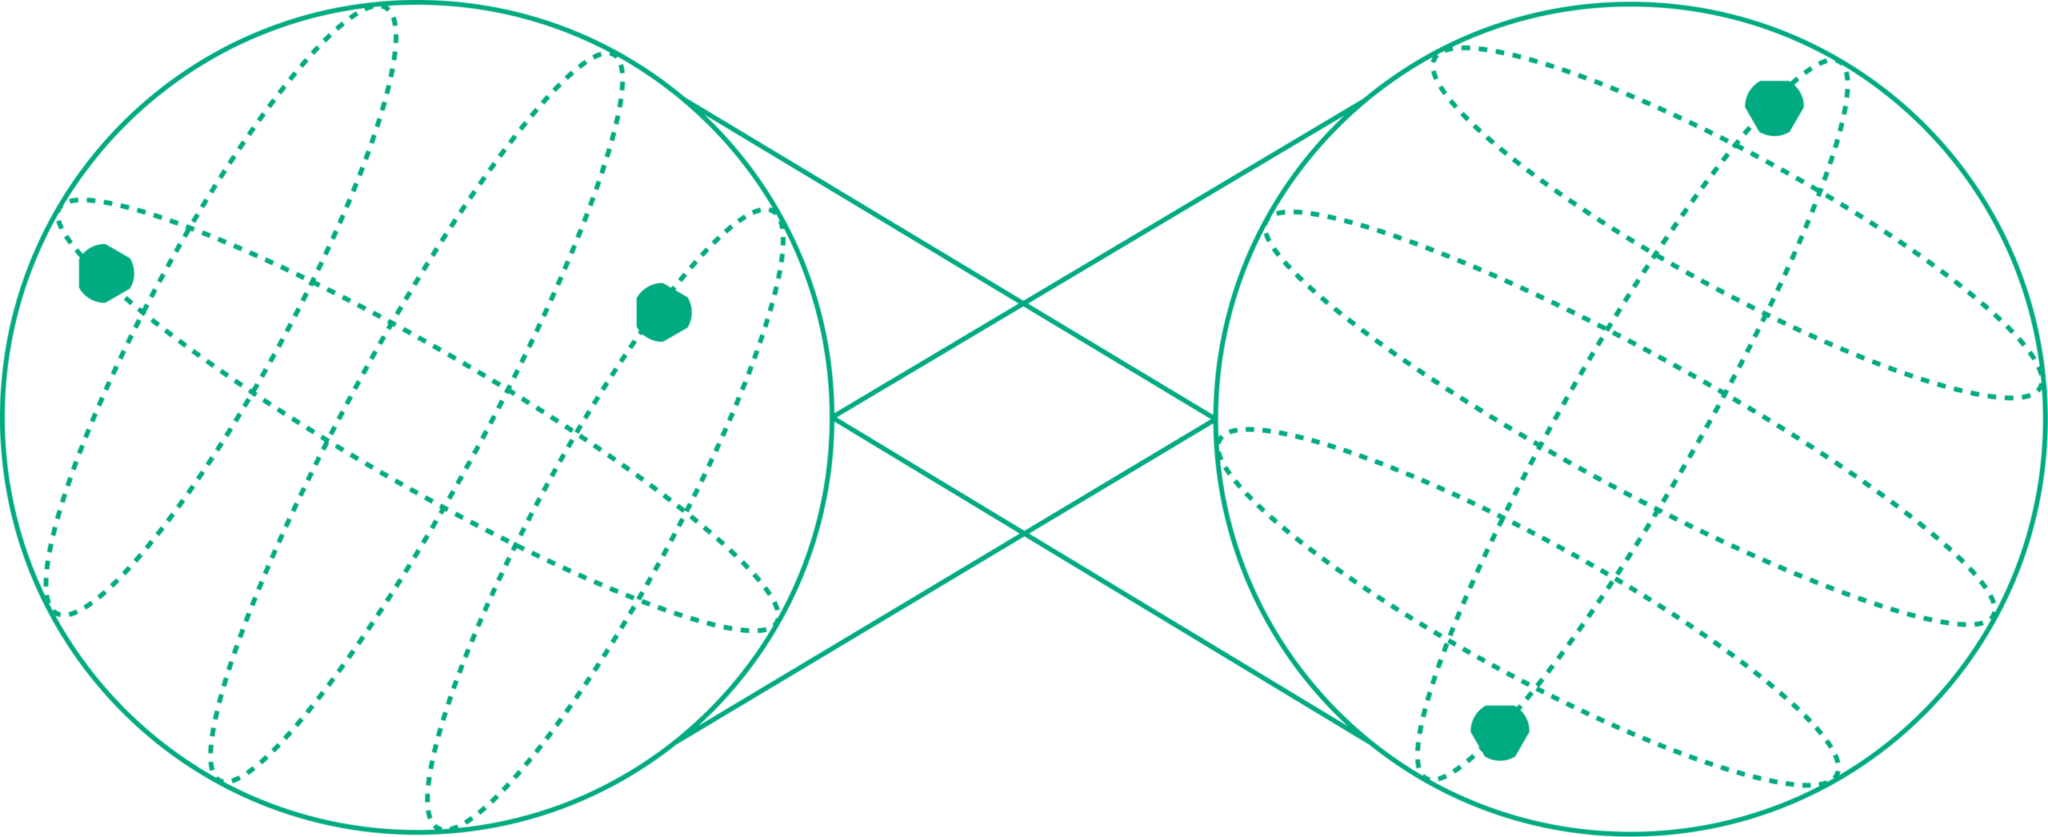 Die Quantenverschränkung ermöglicht es, dass zwei oder mehr Qubits so eng miteinander verbunden sind, dass der Zustand des einen Qubits vom Zustand des anderen abhängt, unabhängig davon, wie weit sie voneinander entfernt sind.